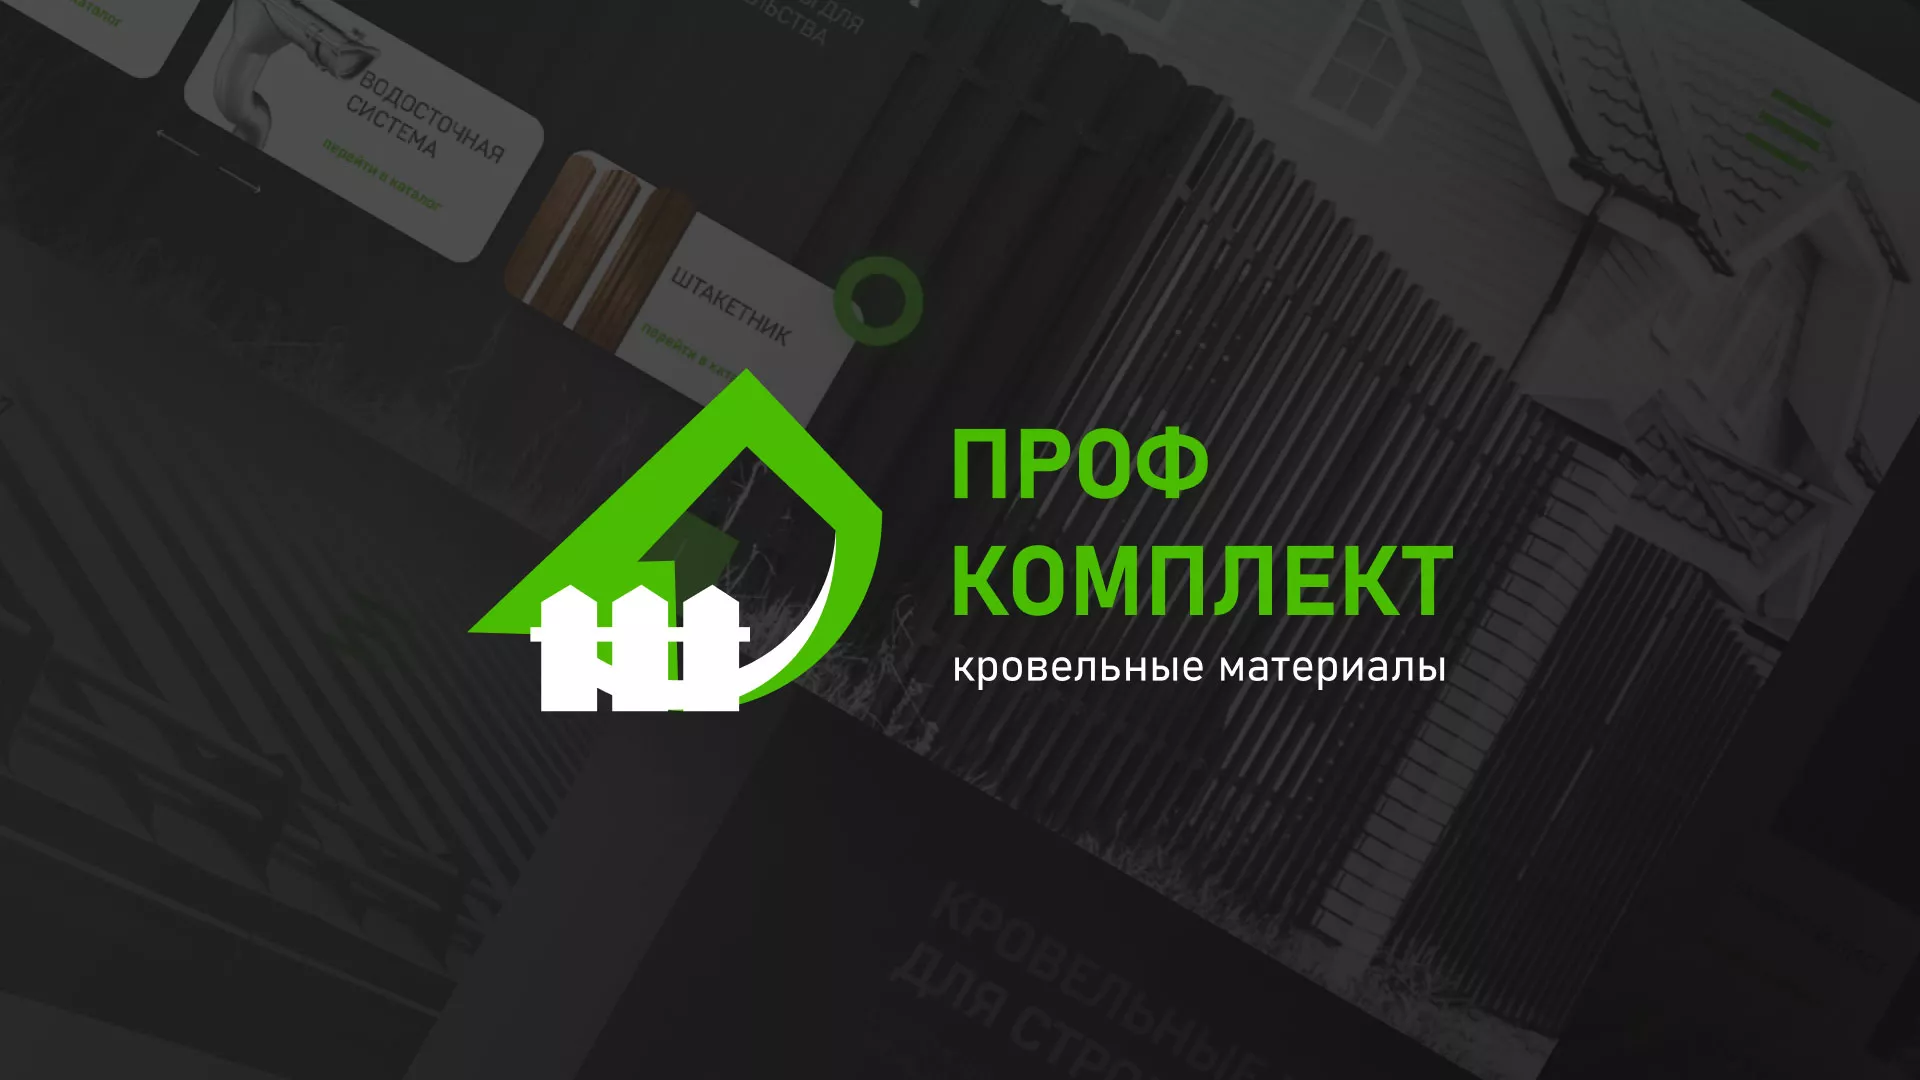 Создание сайта компании «Проф Комплект» в Звенигово